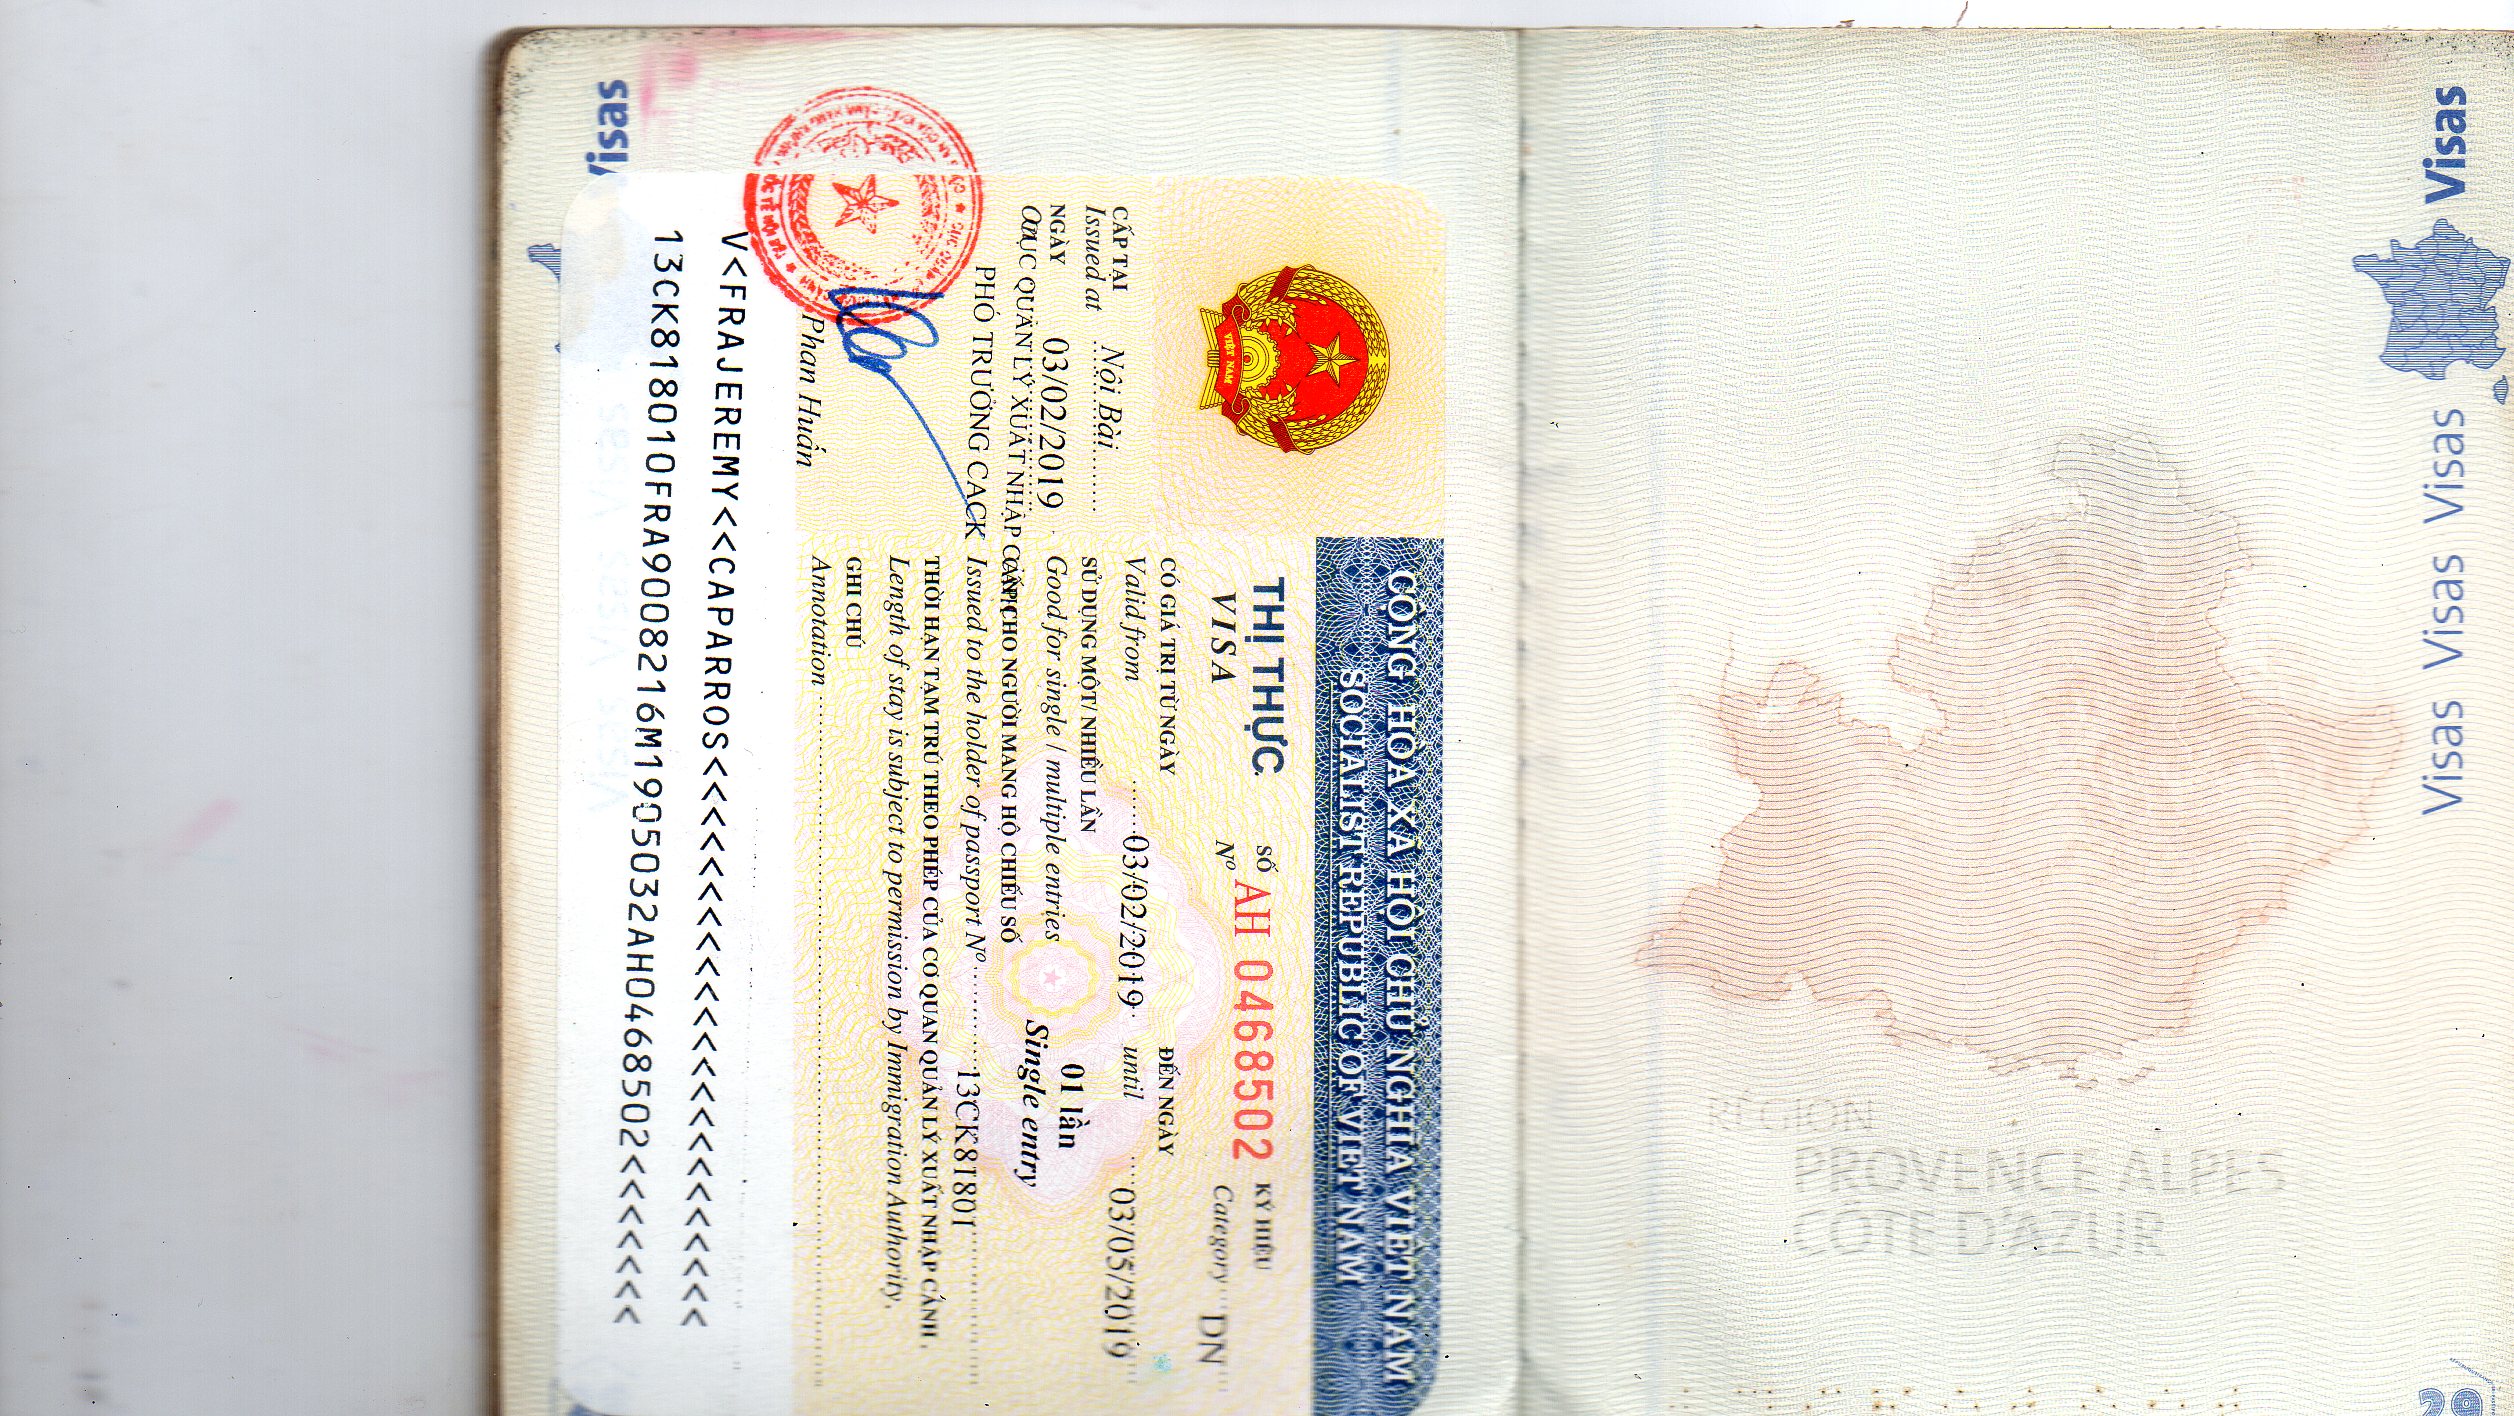 越南签证怎么办理？ | Vietnamimmigration.com official website | e-visa & Visa On ...